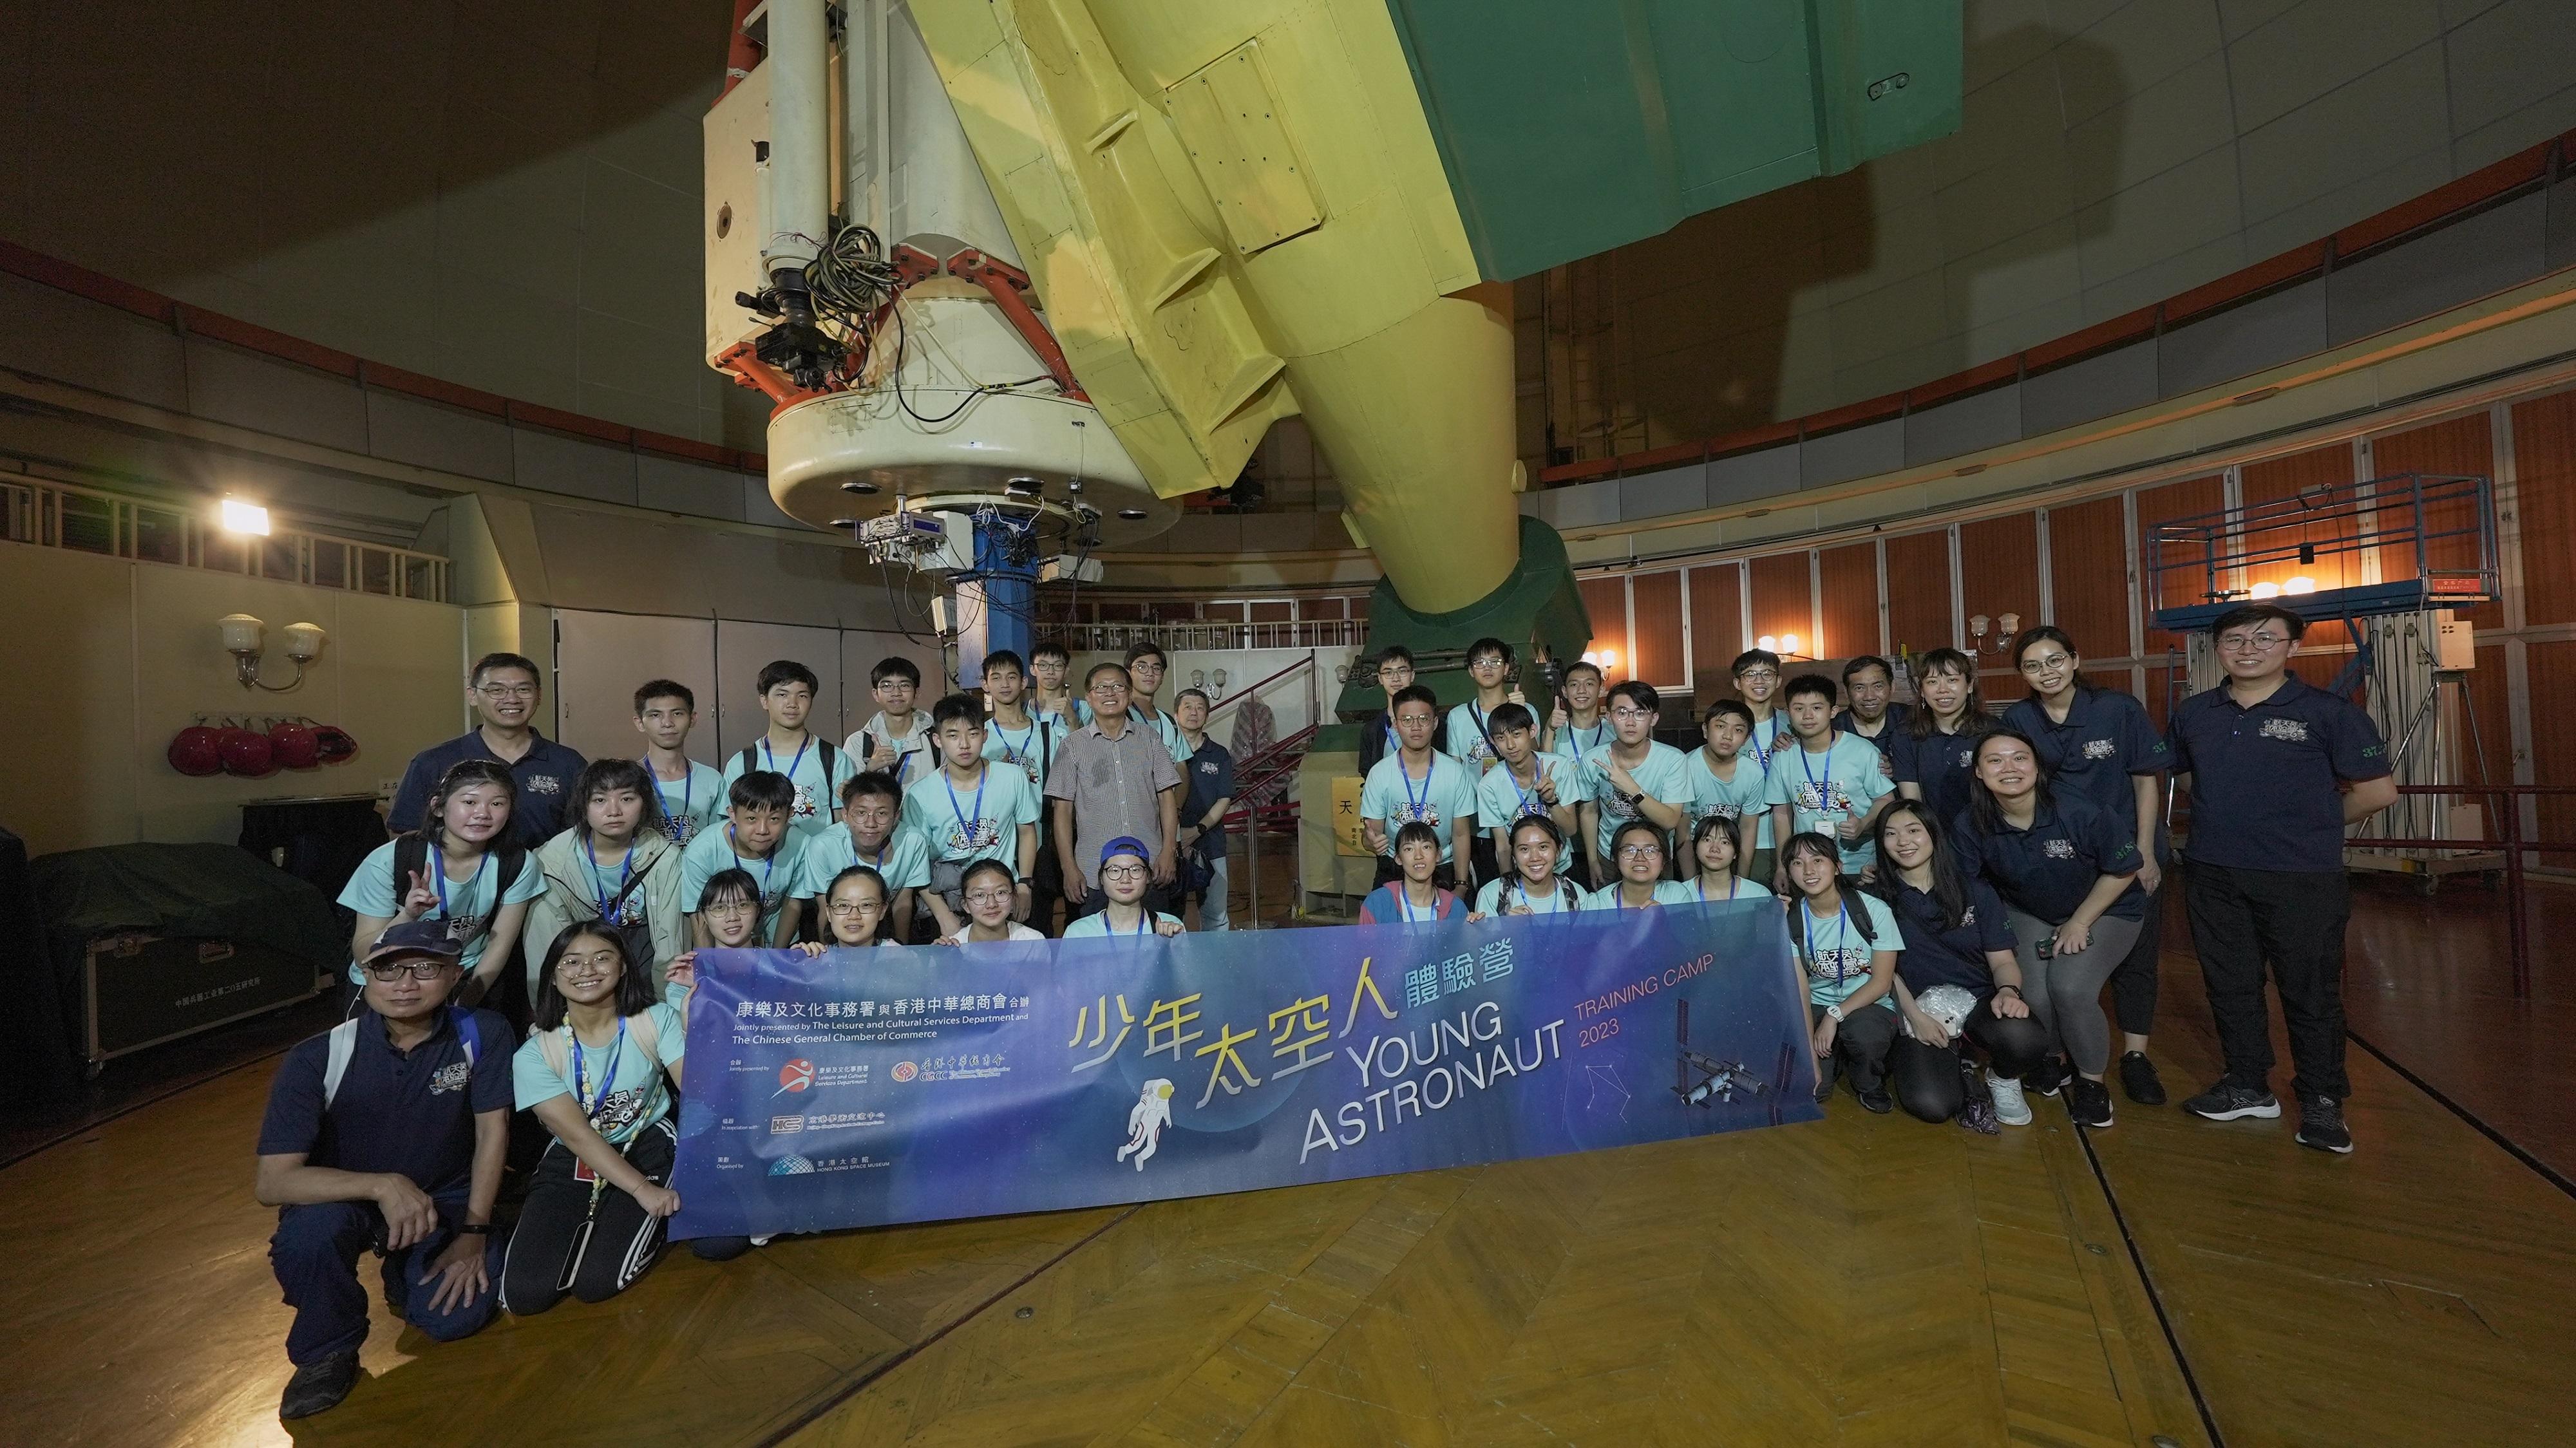 三十位中学生完成由香港太空馆策划的「少年太空人体验营2023」。图示体验营学员在北京参观国家天文台兴隆观测站。